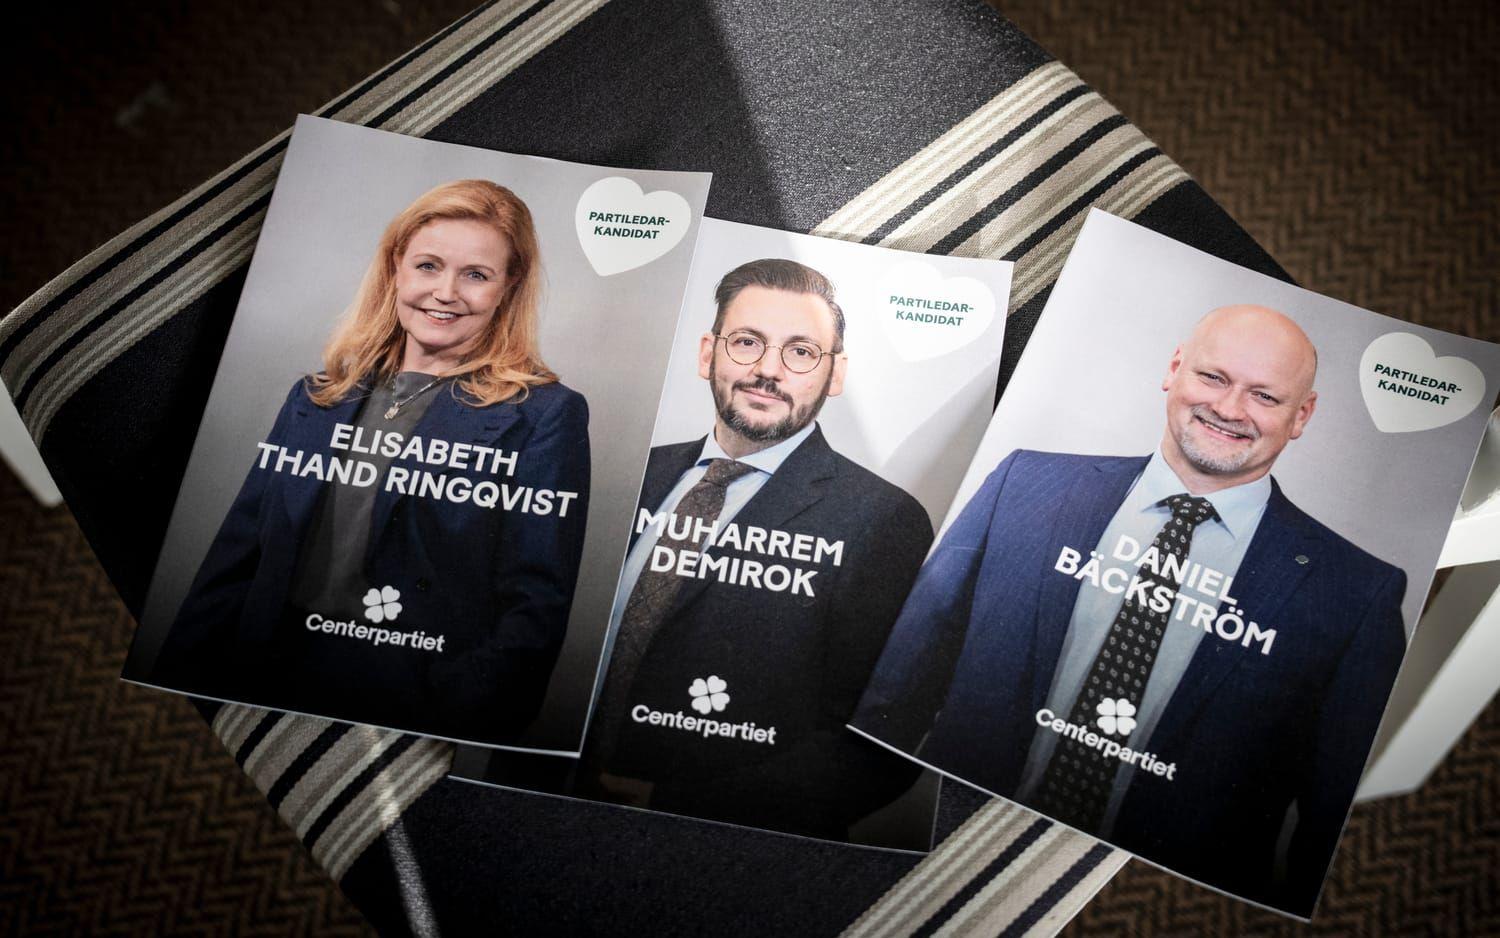 På en extra kongress i februari ska Elisabeth Thand Ringqvist, Muharrem Demirok eller Daniel Bäckström väljas till ny partiledare för Centerpartiet.